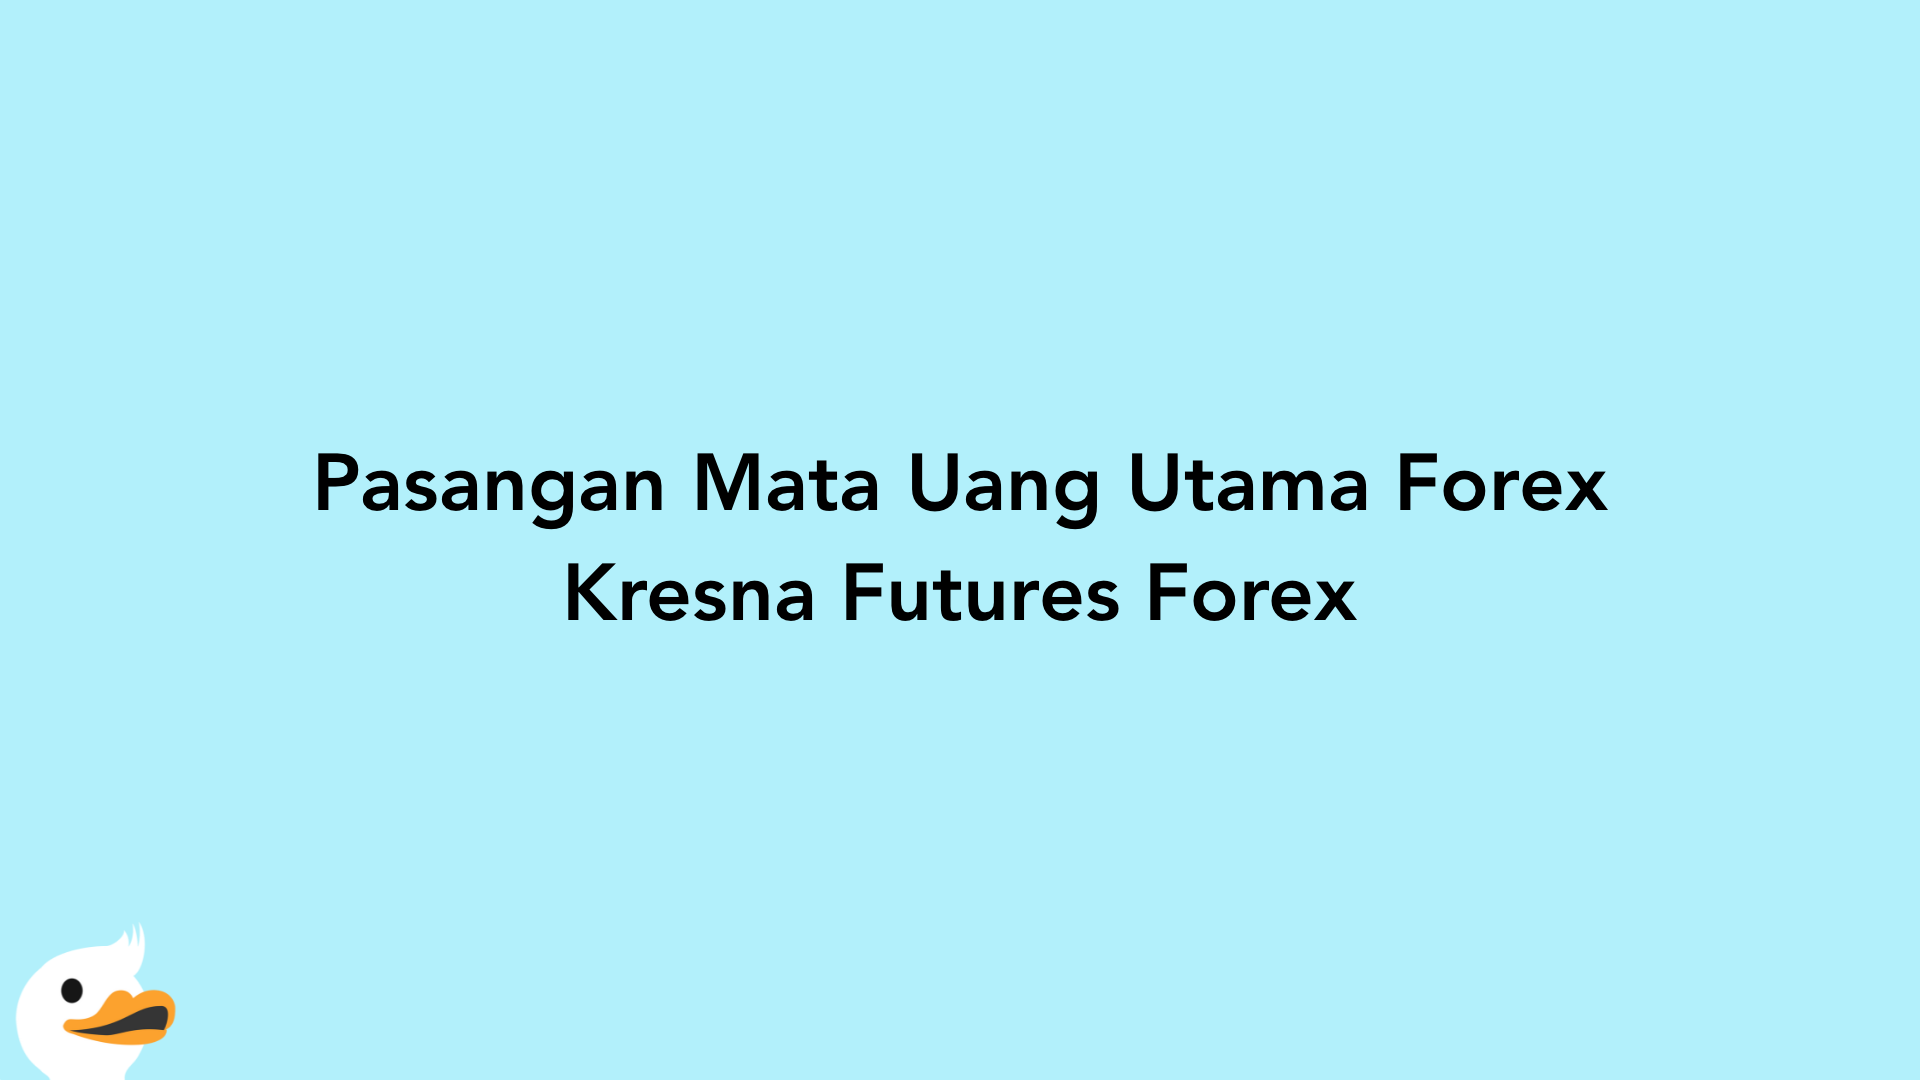 Pasangan Mata Uang Utama Forex Kresna Futures Forex